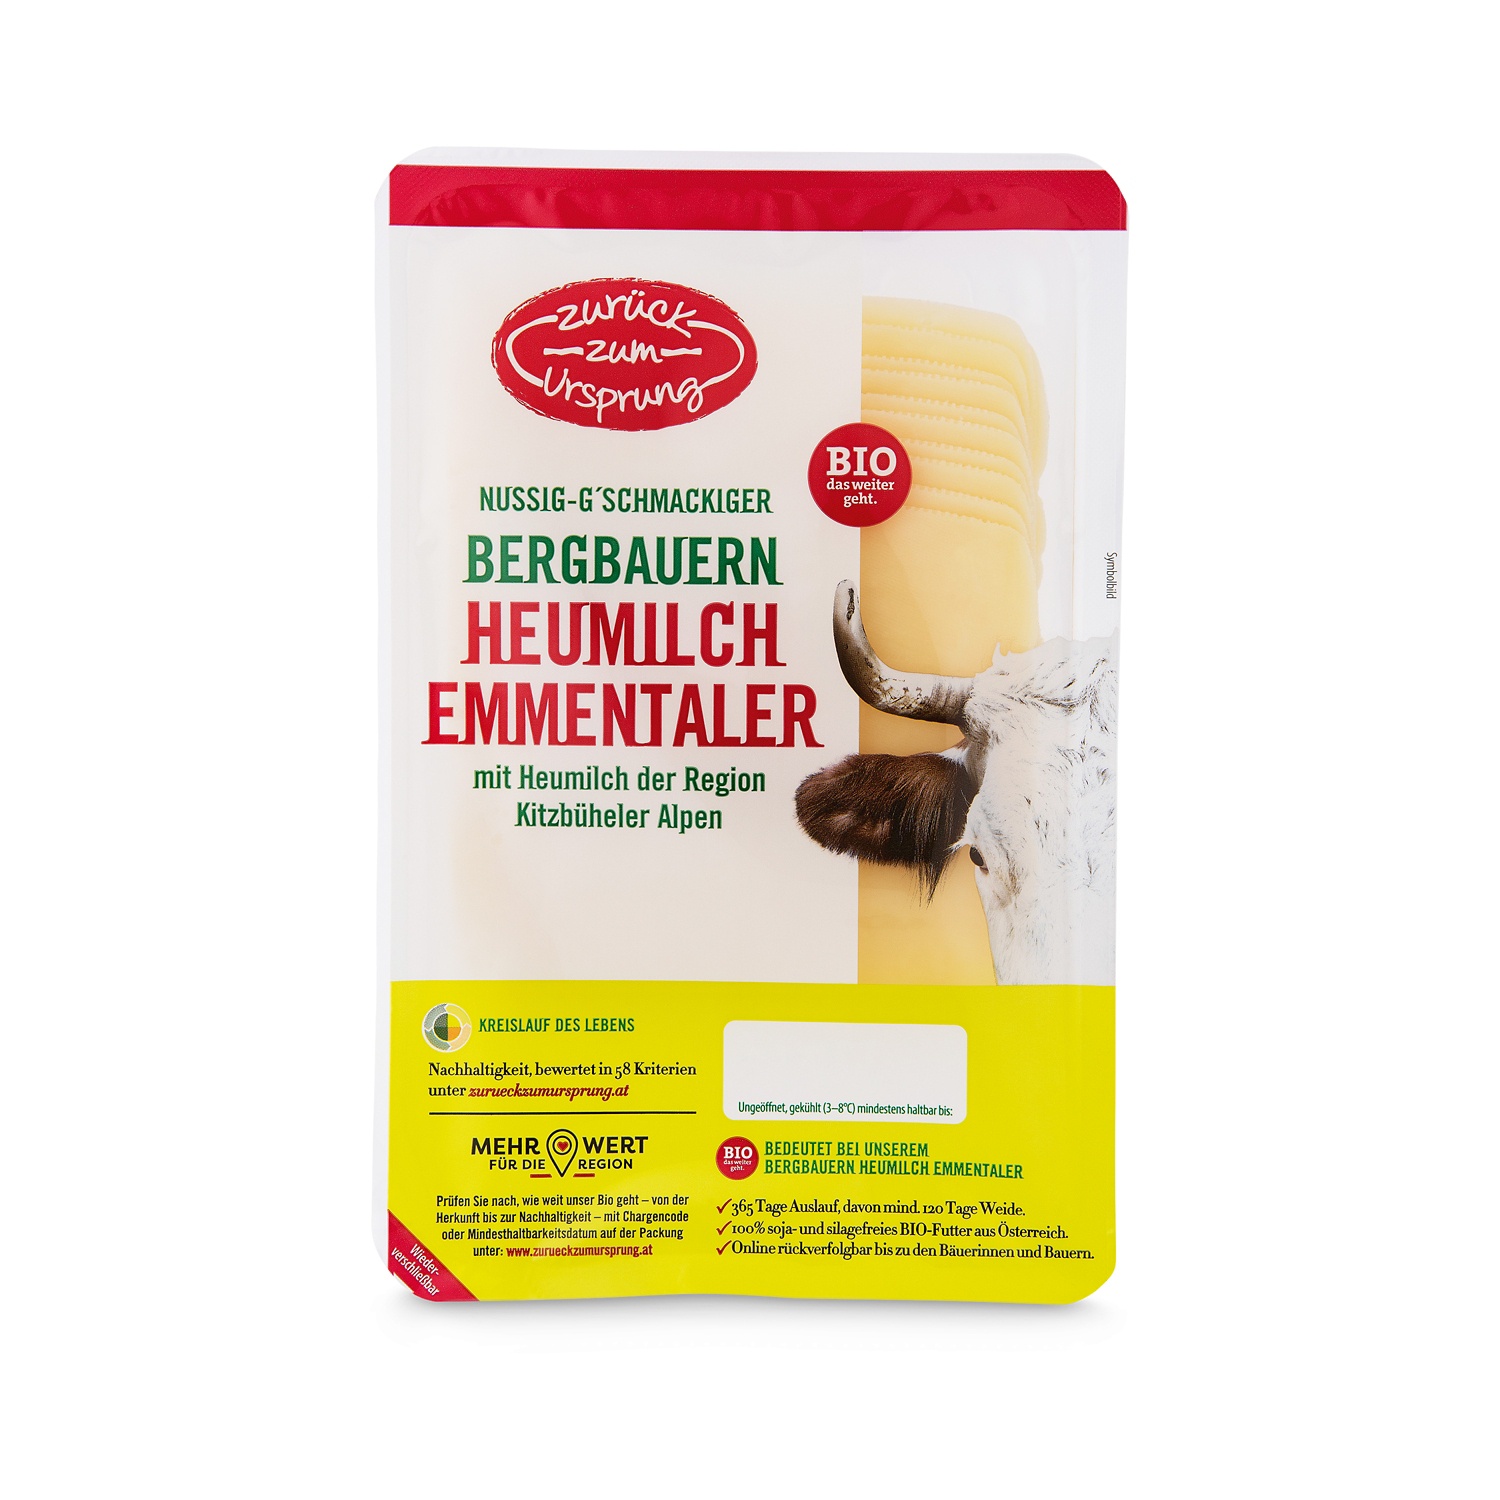 ZURÜCK ZUM URSPRUNG BIO-Bergbauern Heumilch Käsescheiben, Emmentaler